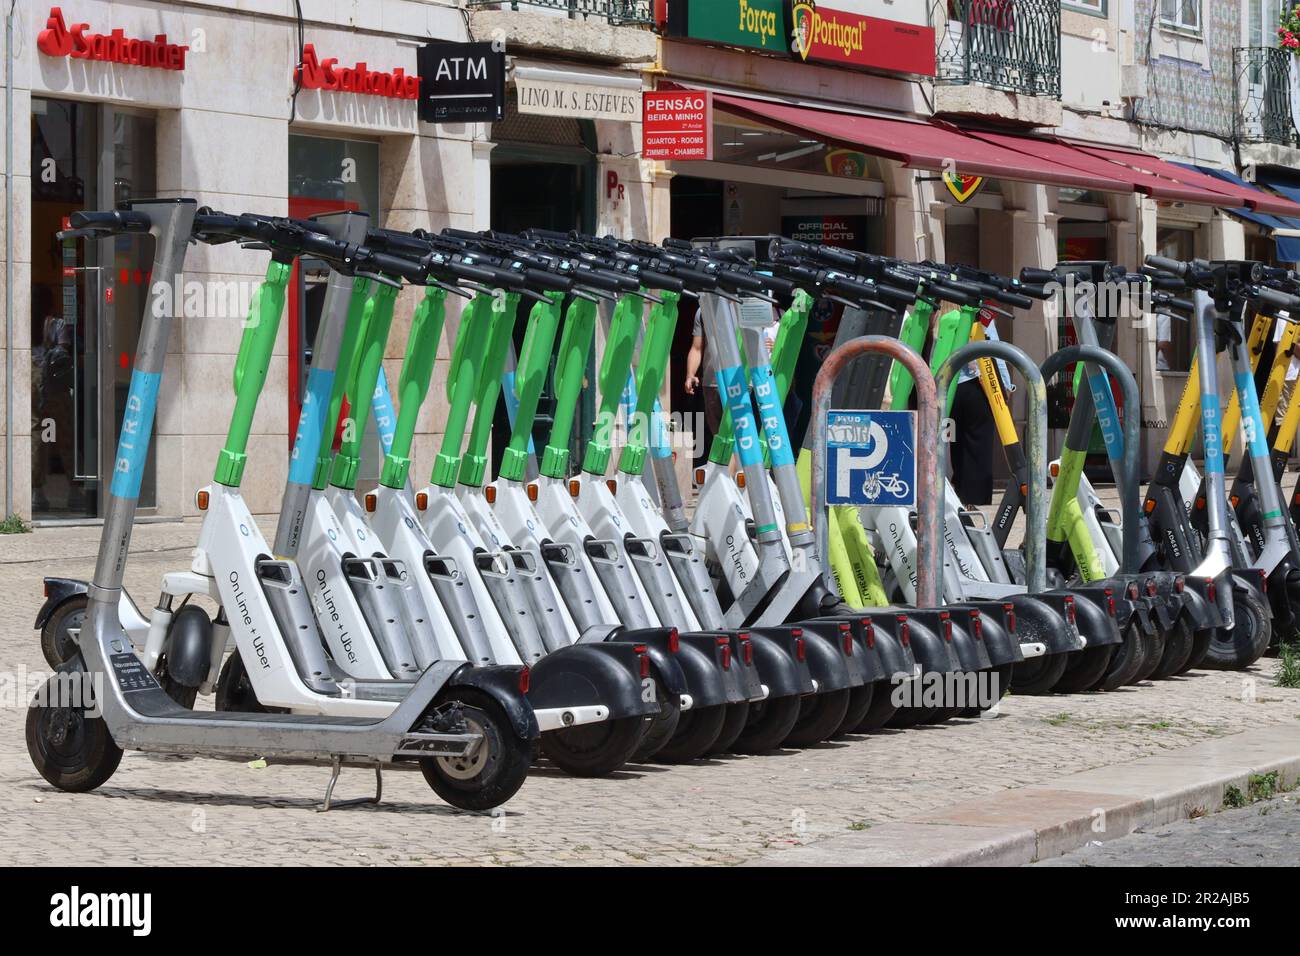 E Motorroller können gemietet werden und werden in regulierten Warteschlangen für Einheimische und Touristen in Lissabon vollständig abgestellt. Verfügbare Marken sind Limette, Vogel, Whoosh, Hive. Stockfoto